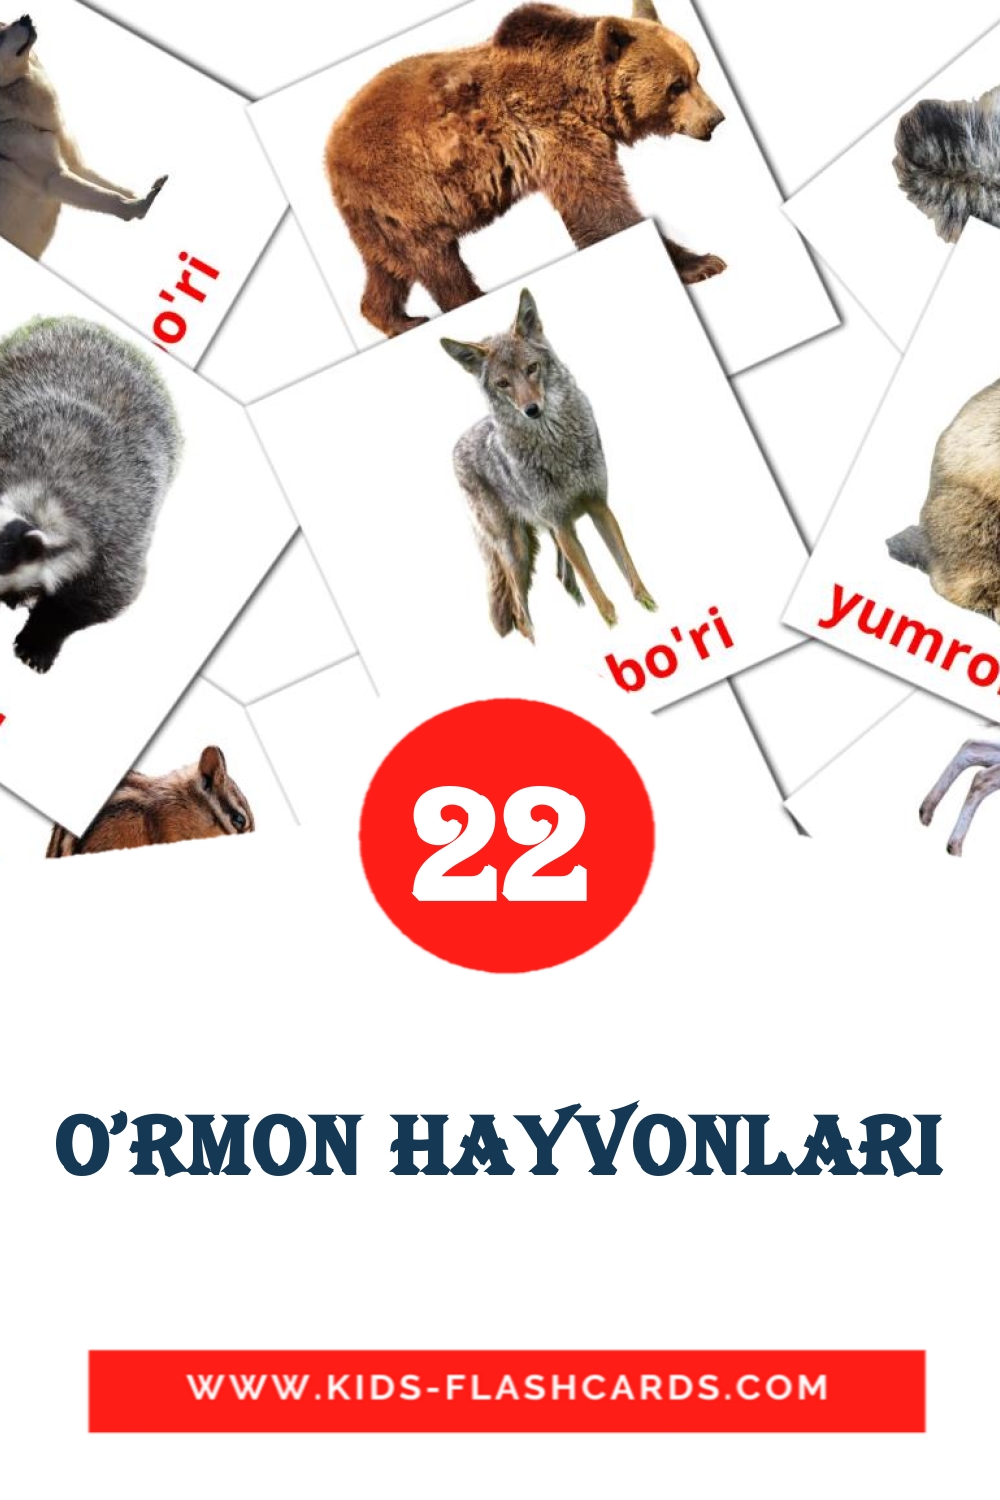 O'rmon hayvonlari на узбекском для Детского Сада (22 карточки)